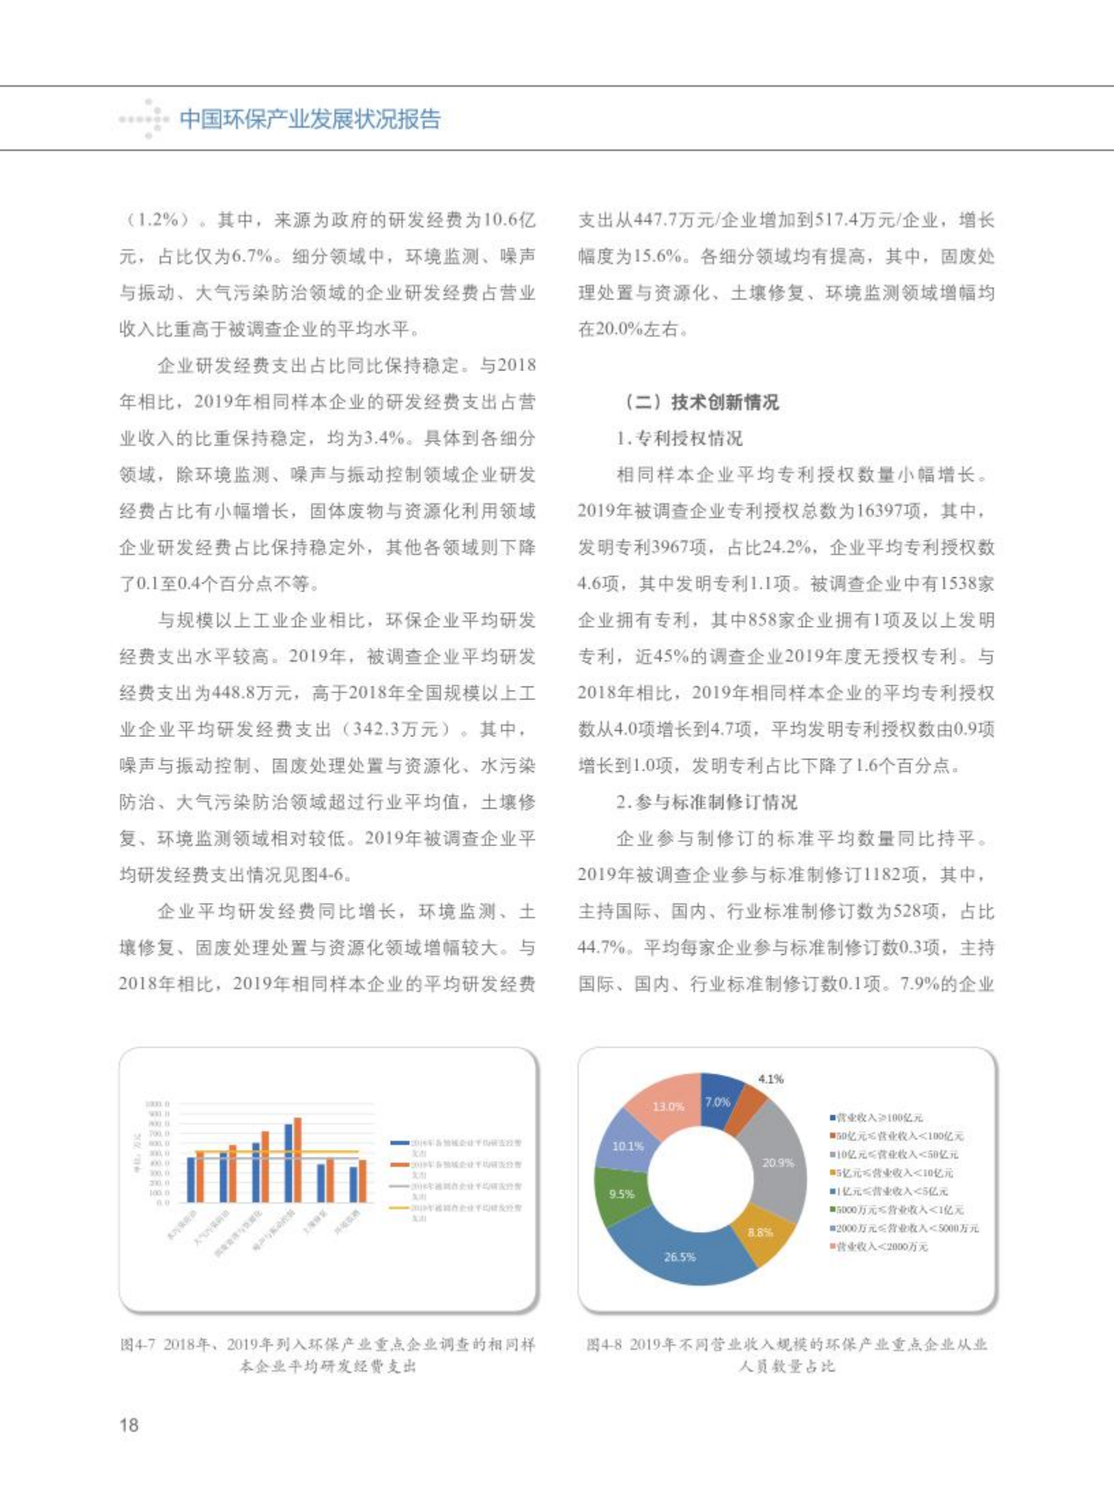 【2020】中国环保产业发展状况报告_19.png